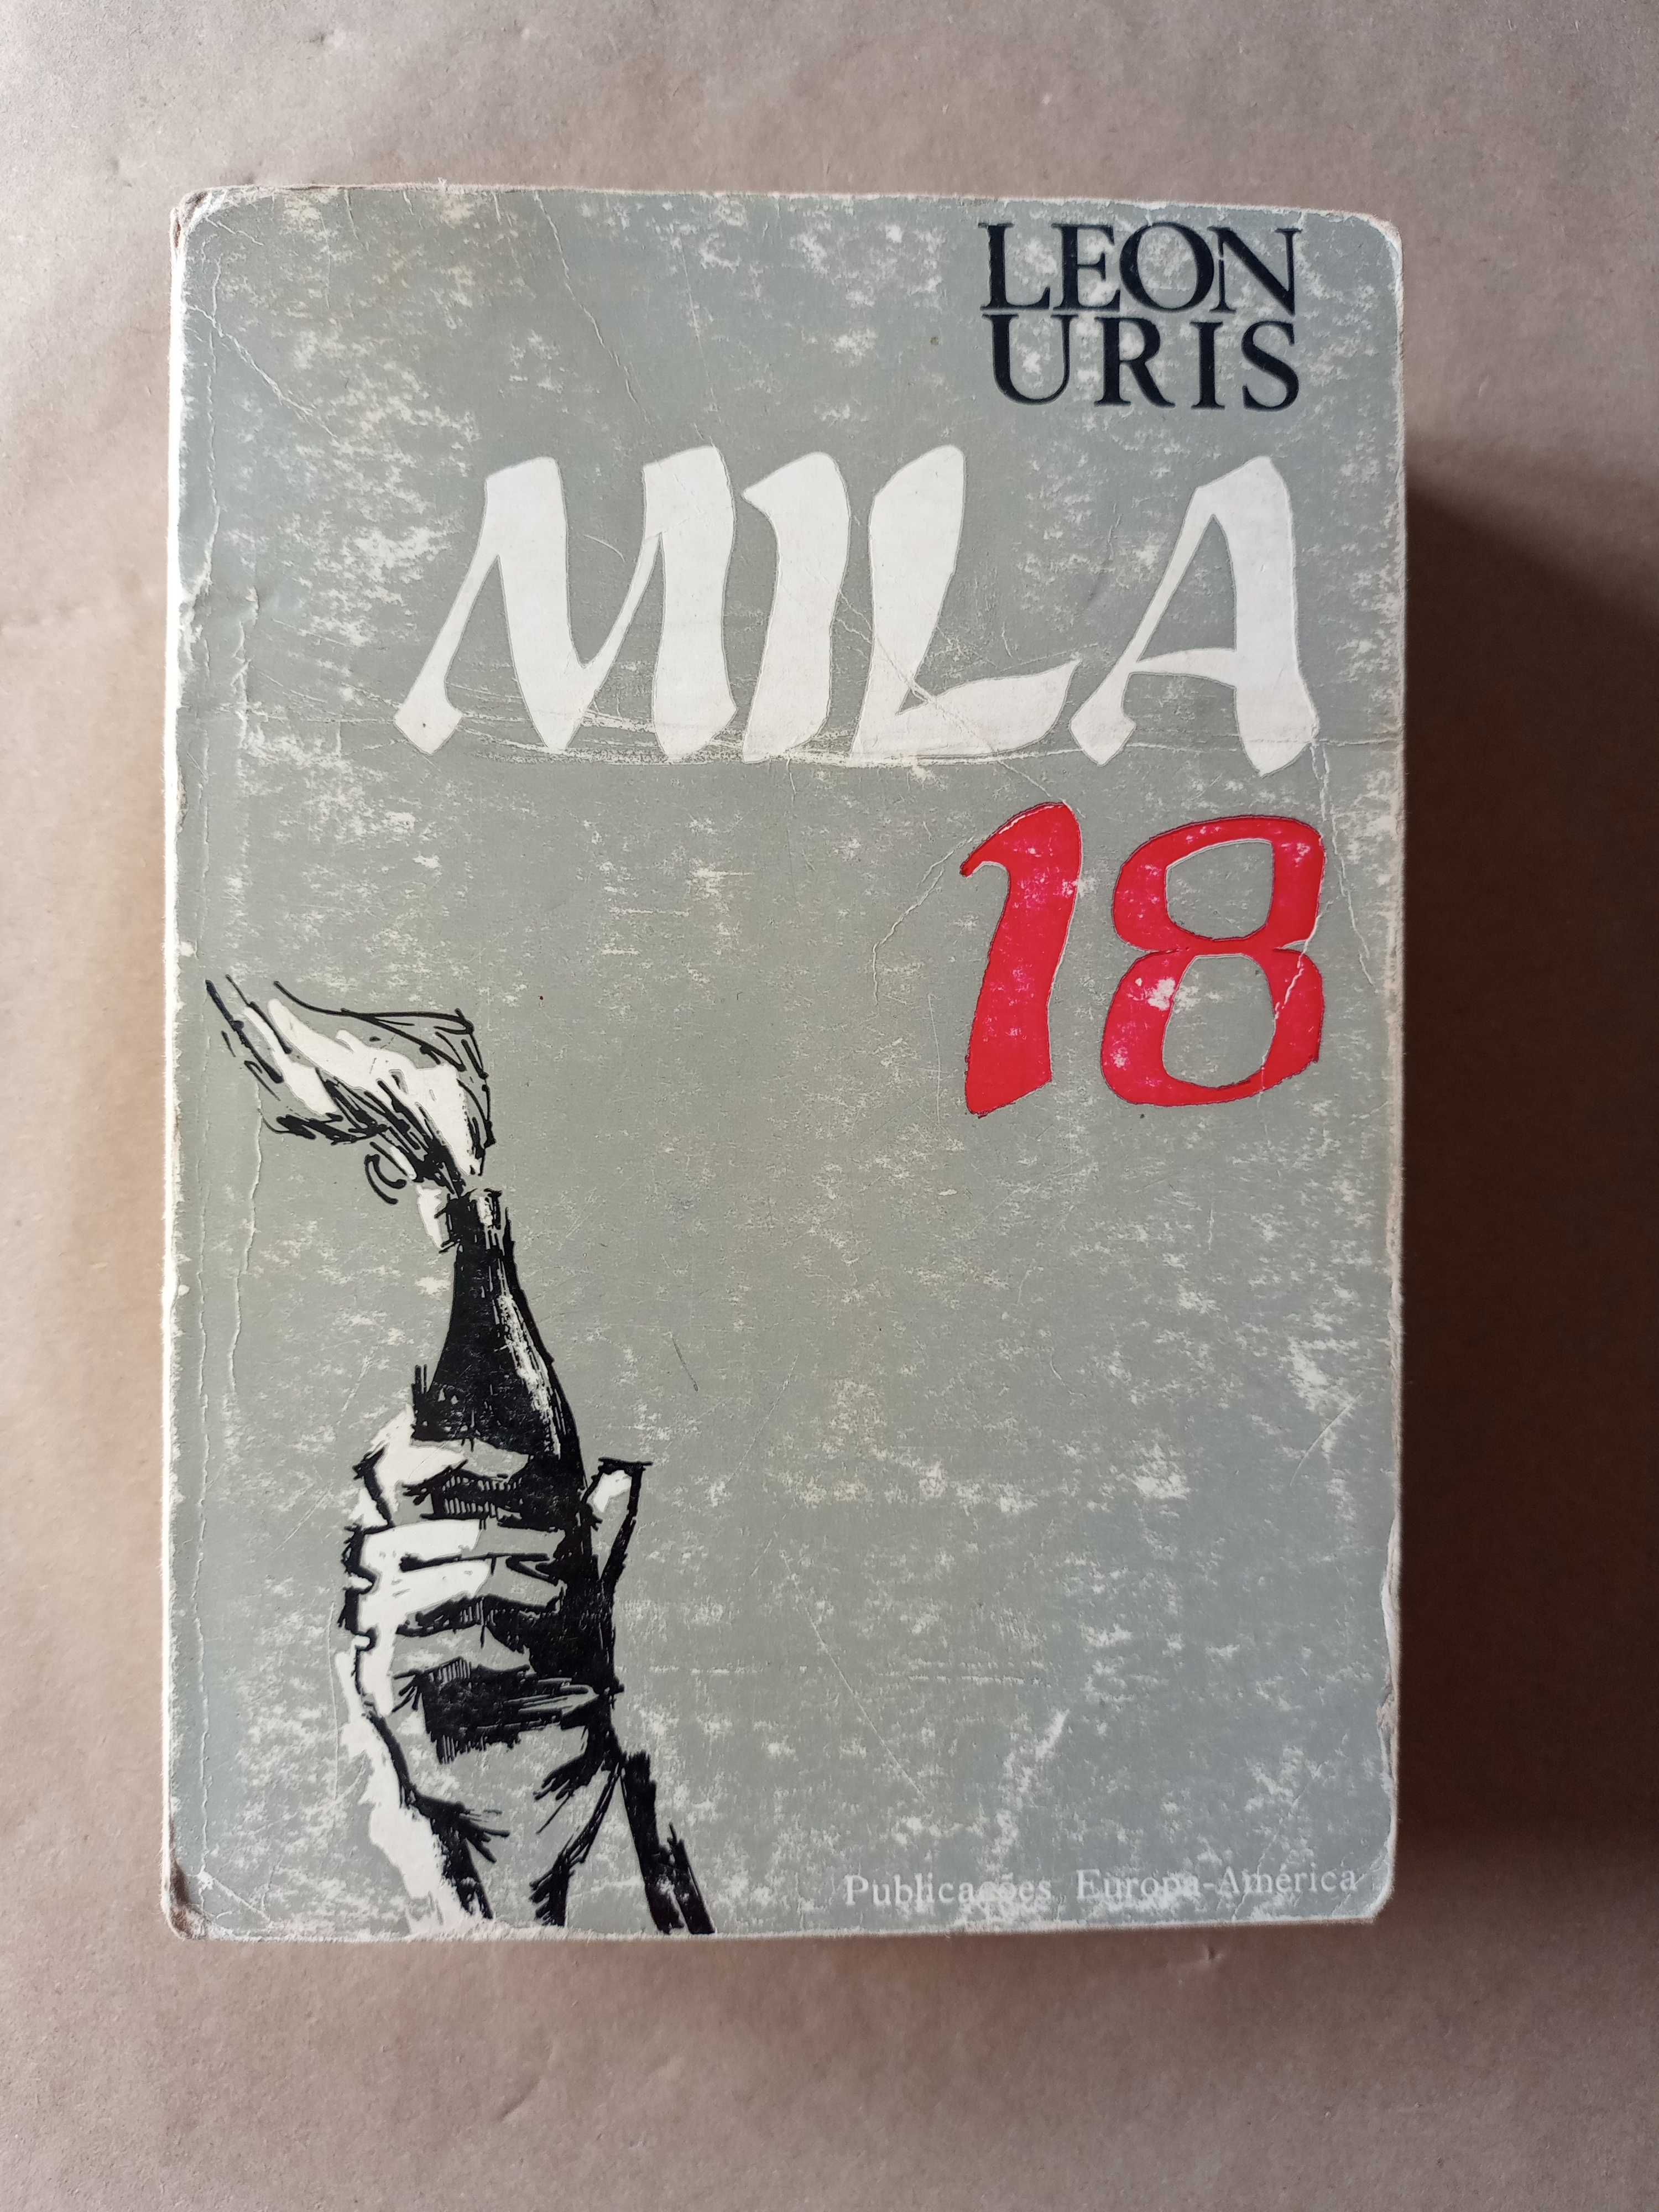 Mila 18 de Leon Uris